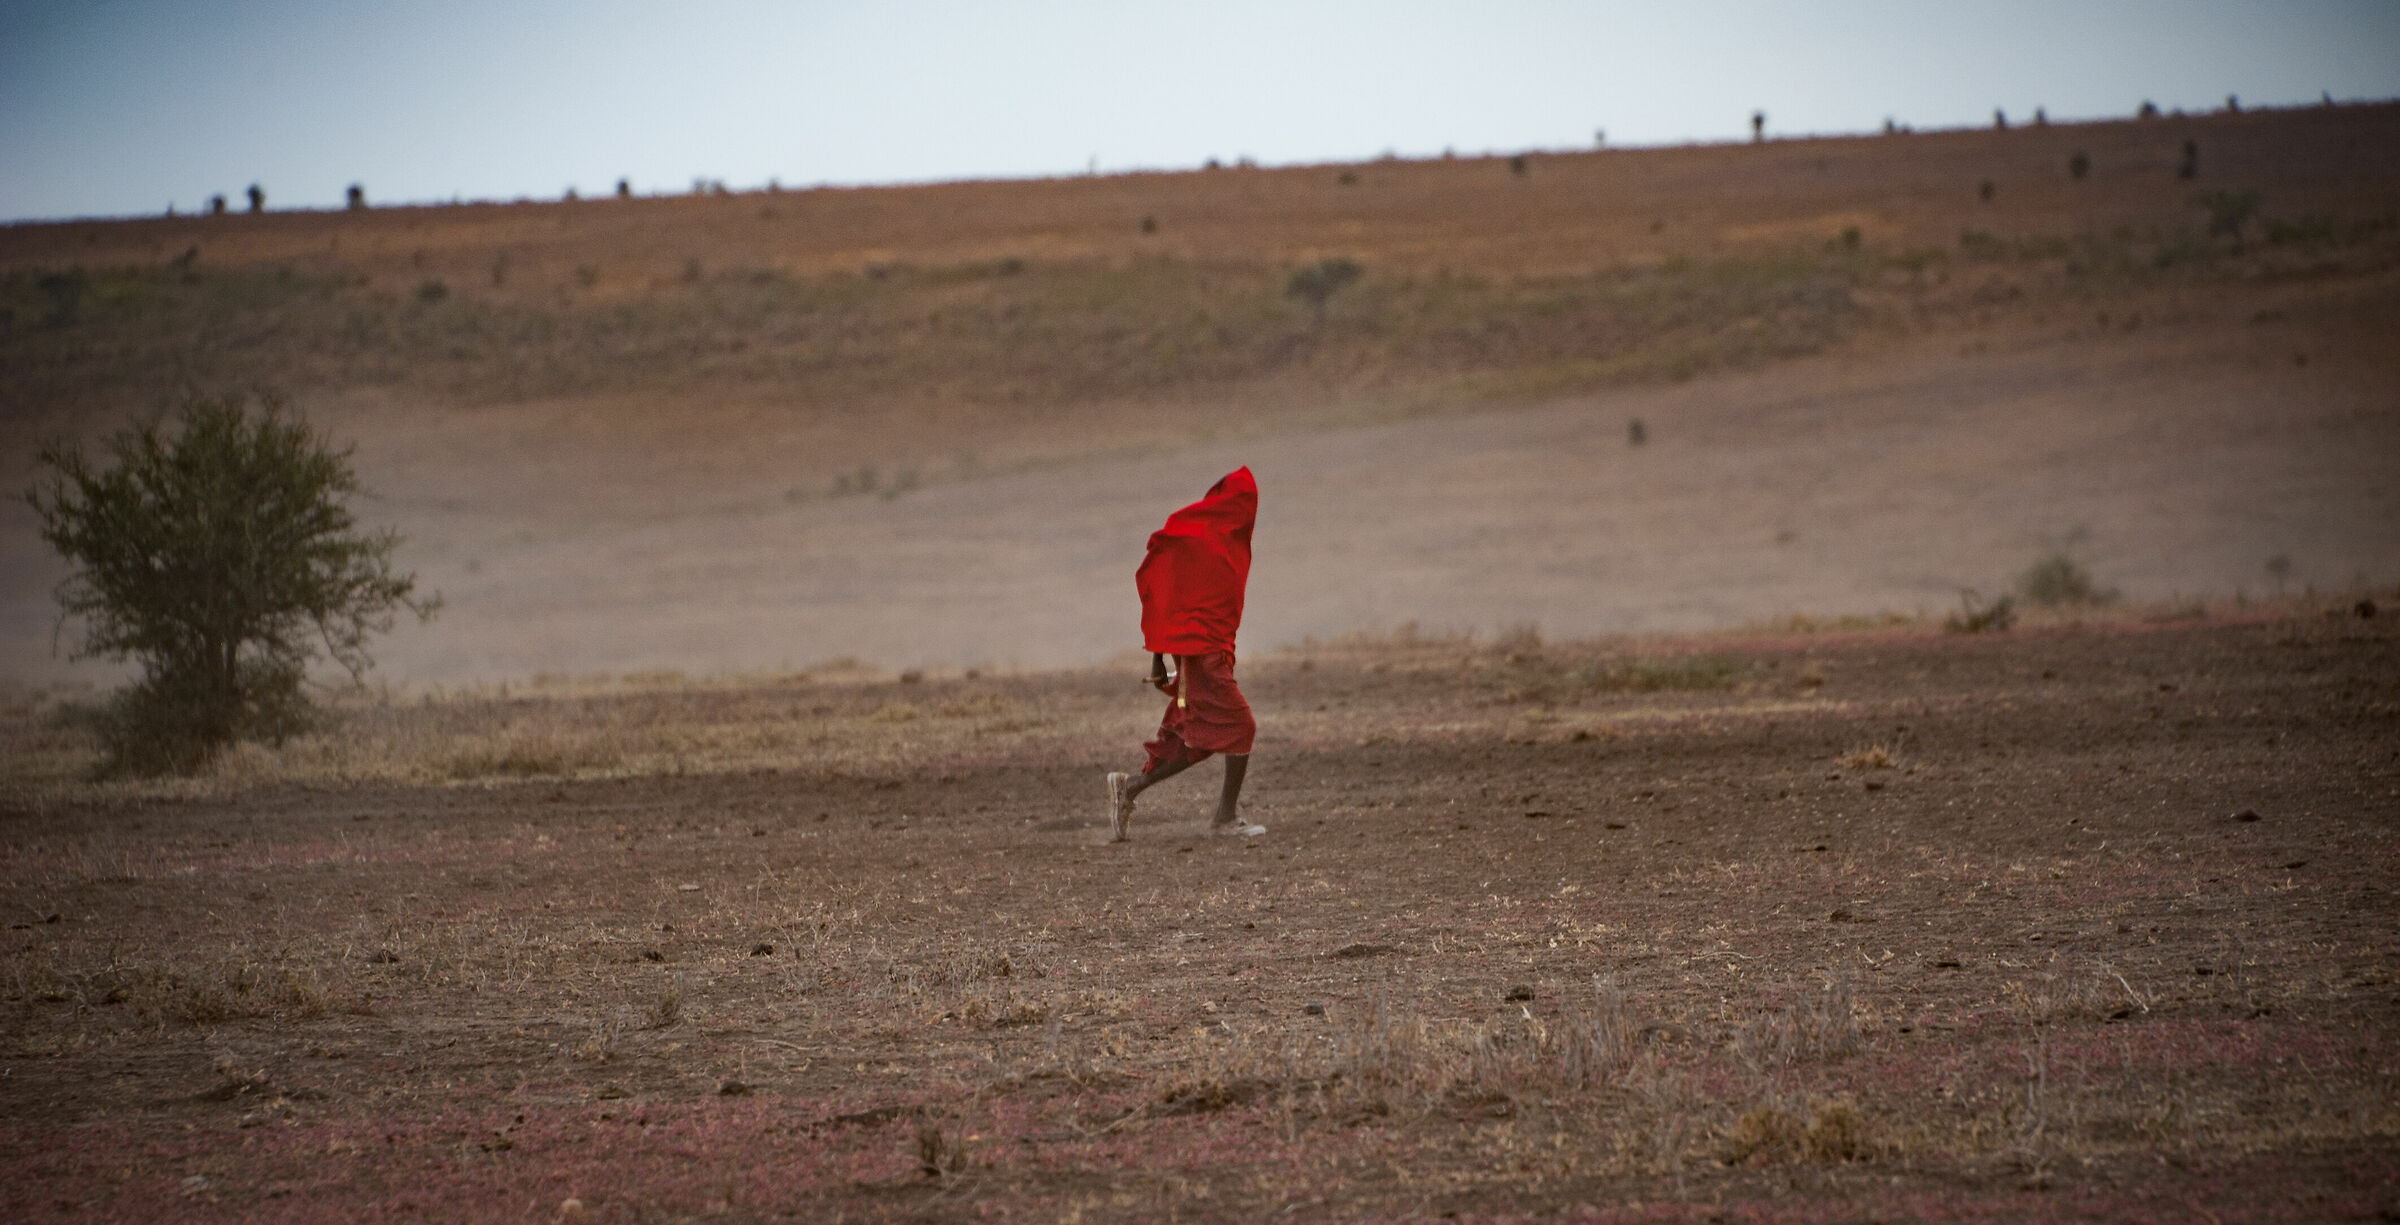 Masai in the blizzard...